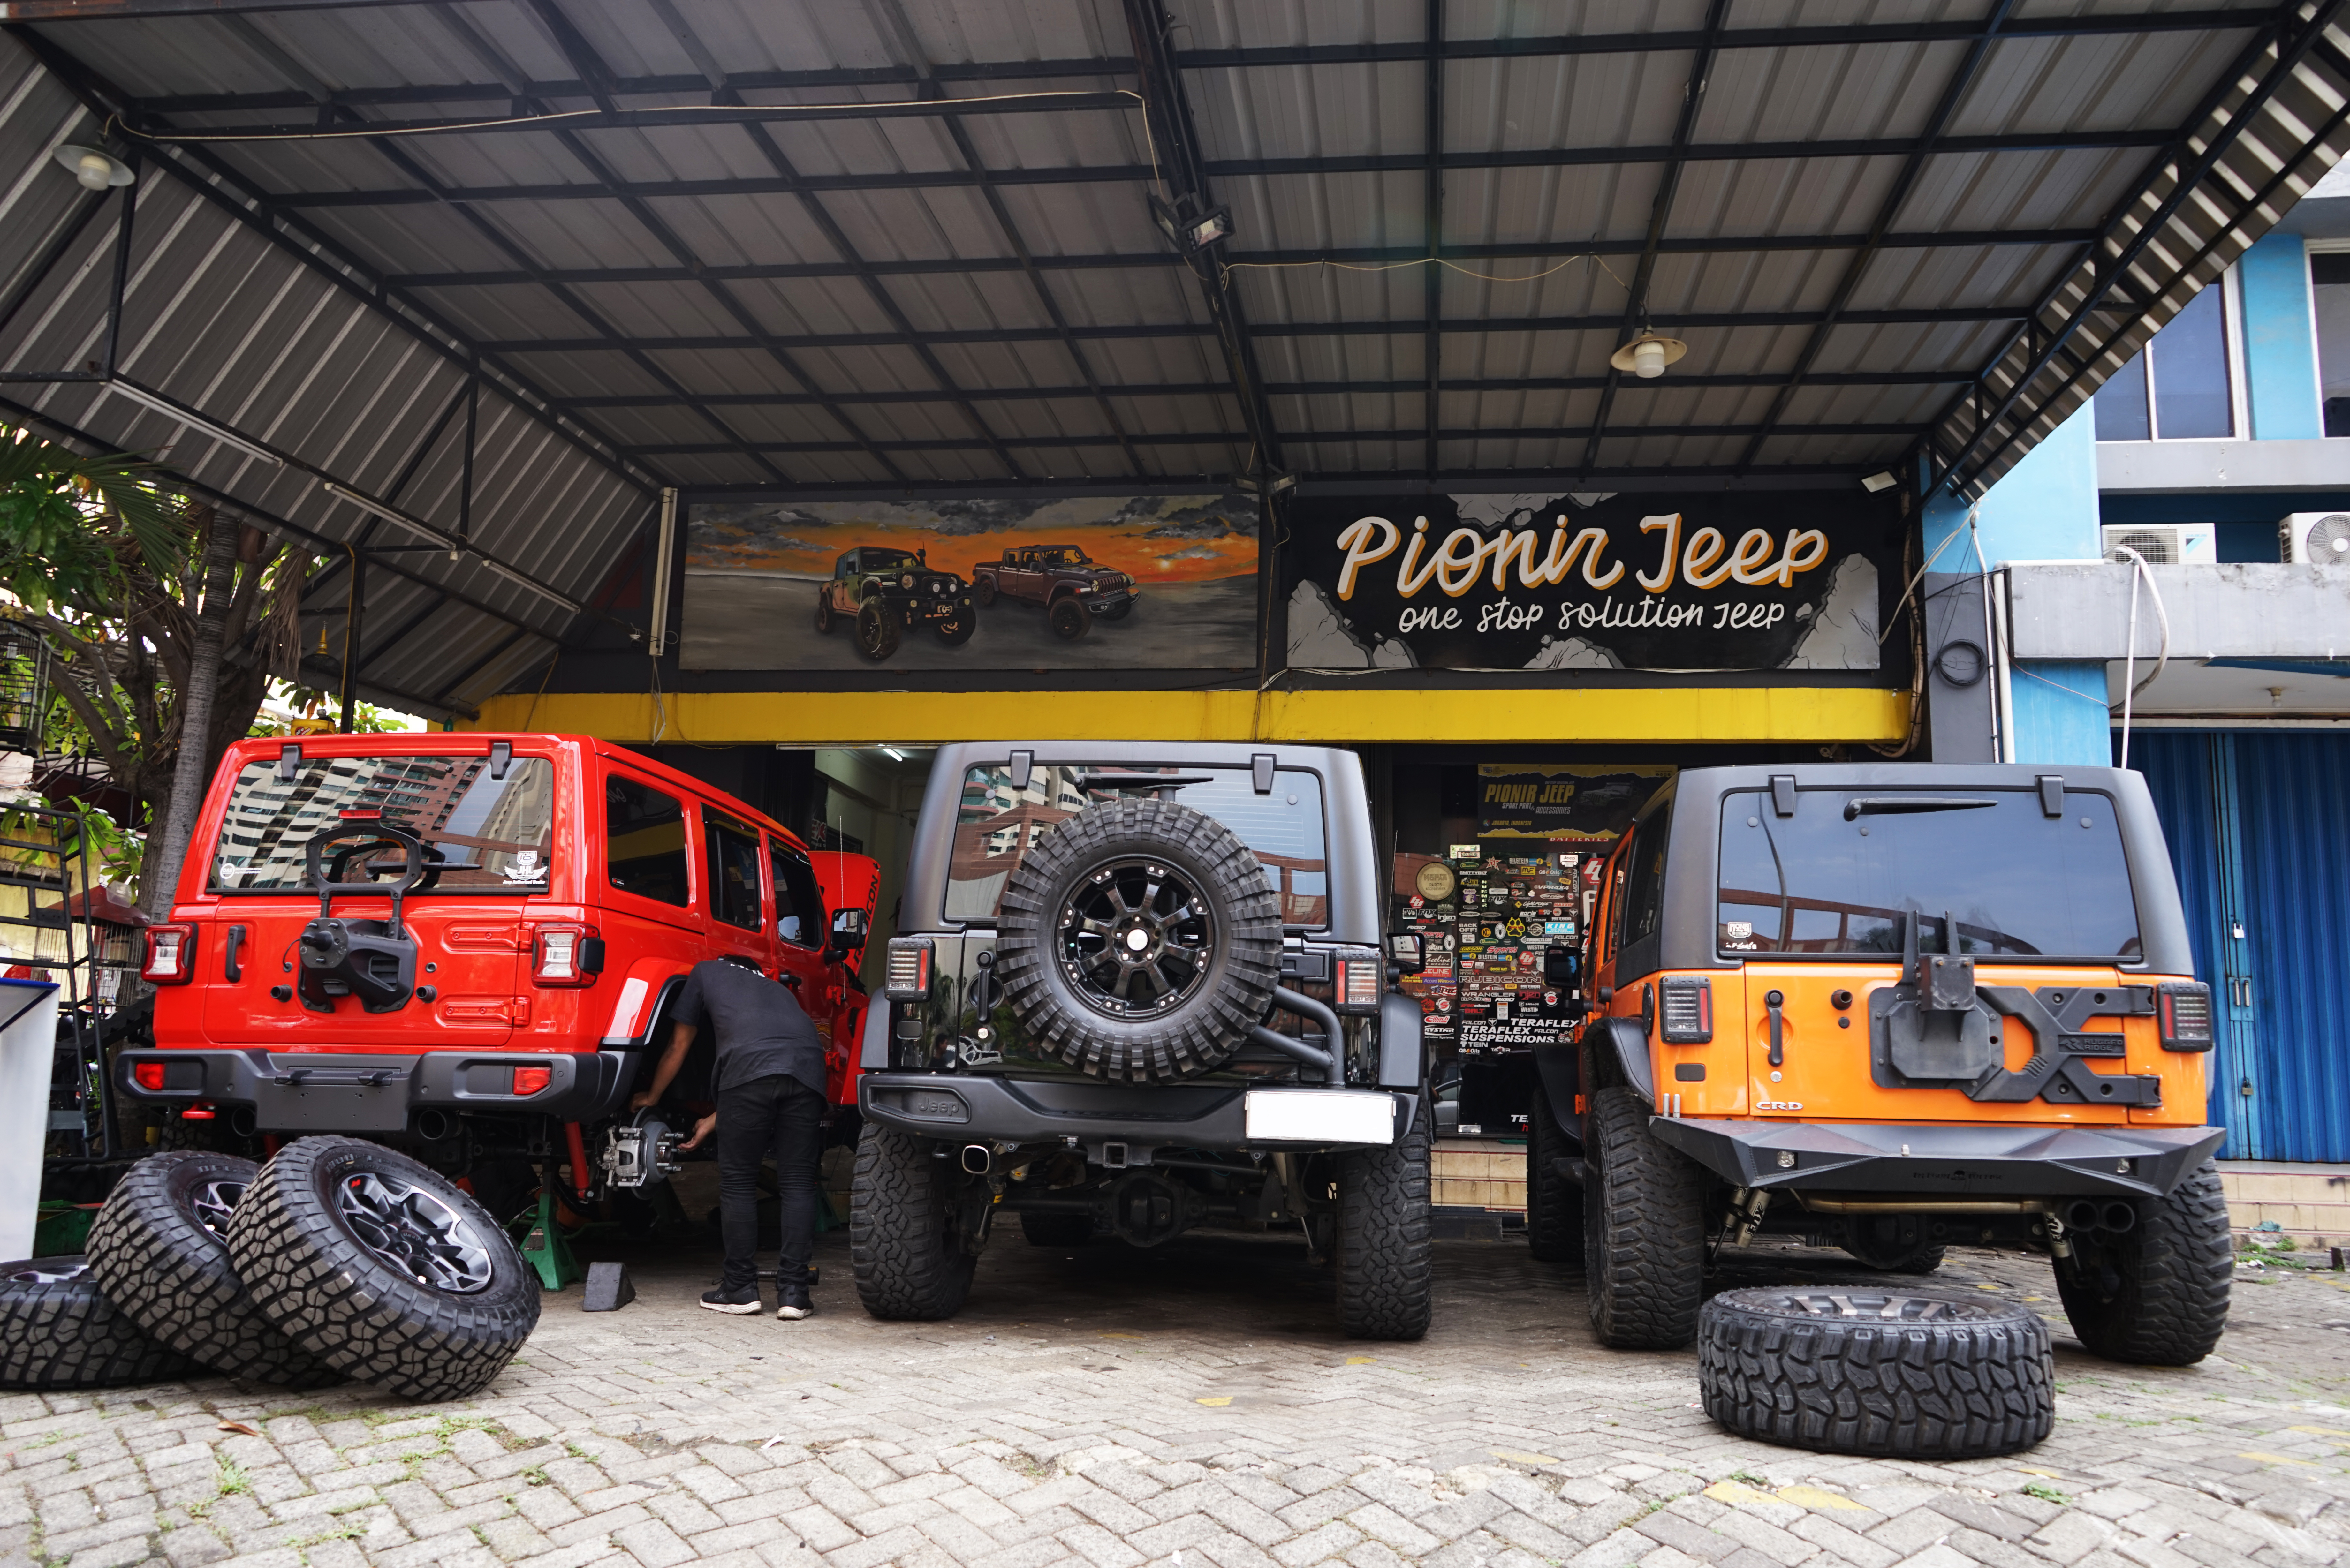 Modifikasi Jeep Rubicon - Bengkel Jeep Jakarta - Lift kit Jeep Wrangler JK, JL, JT - Pionir Jeep - bengkel modifikasi jeep - rubicon - rubicon - rubicon - rubicon - 4x4 (9) Zoe Levana